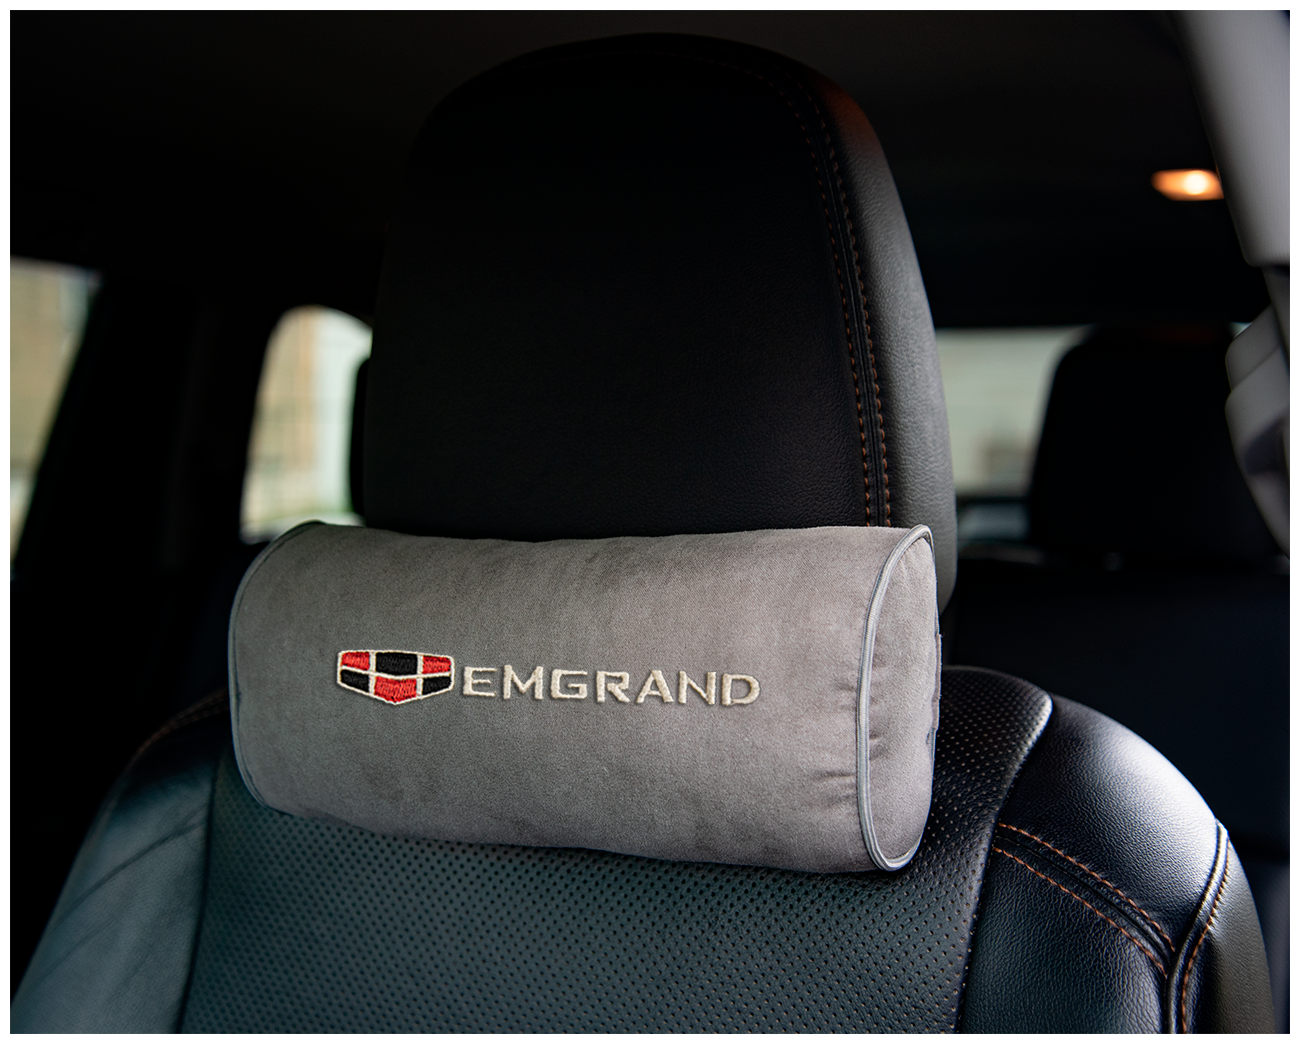 Автомобильная подушка-валик на подголовник алькантара L.Grey c вышивкой EMGRAND